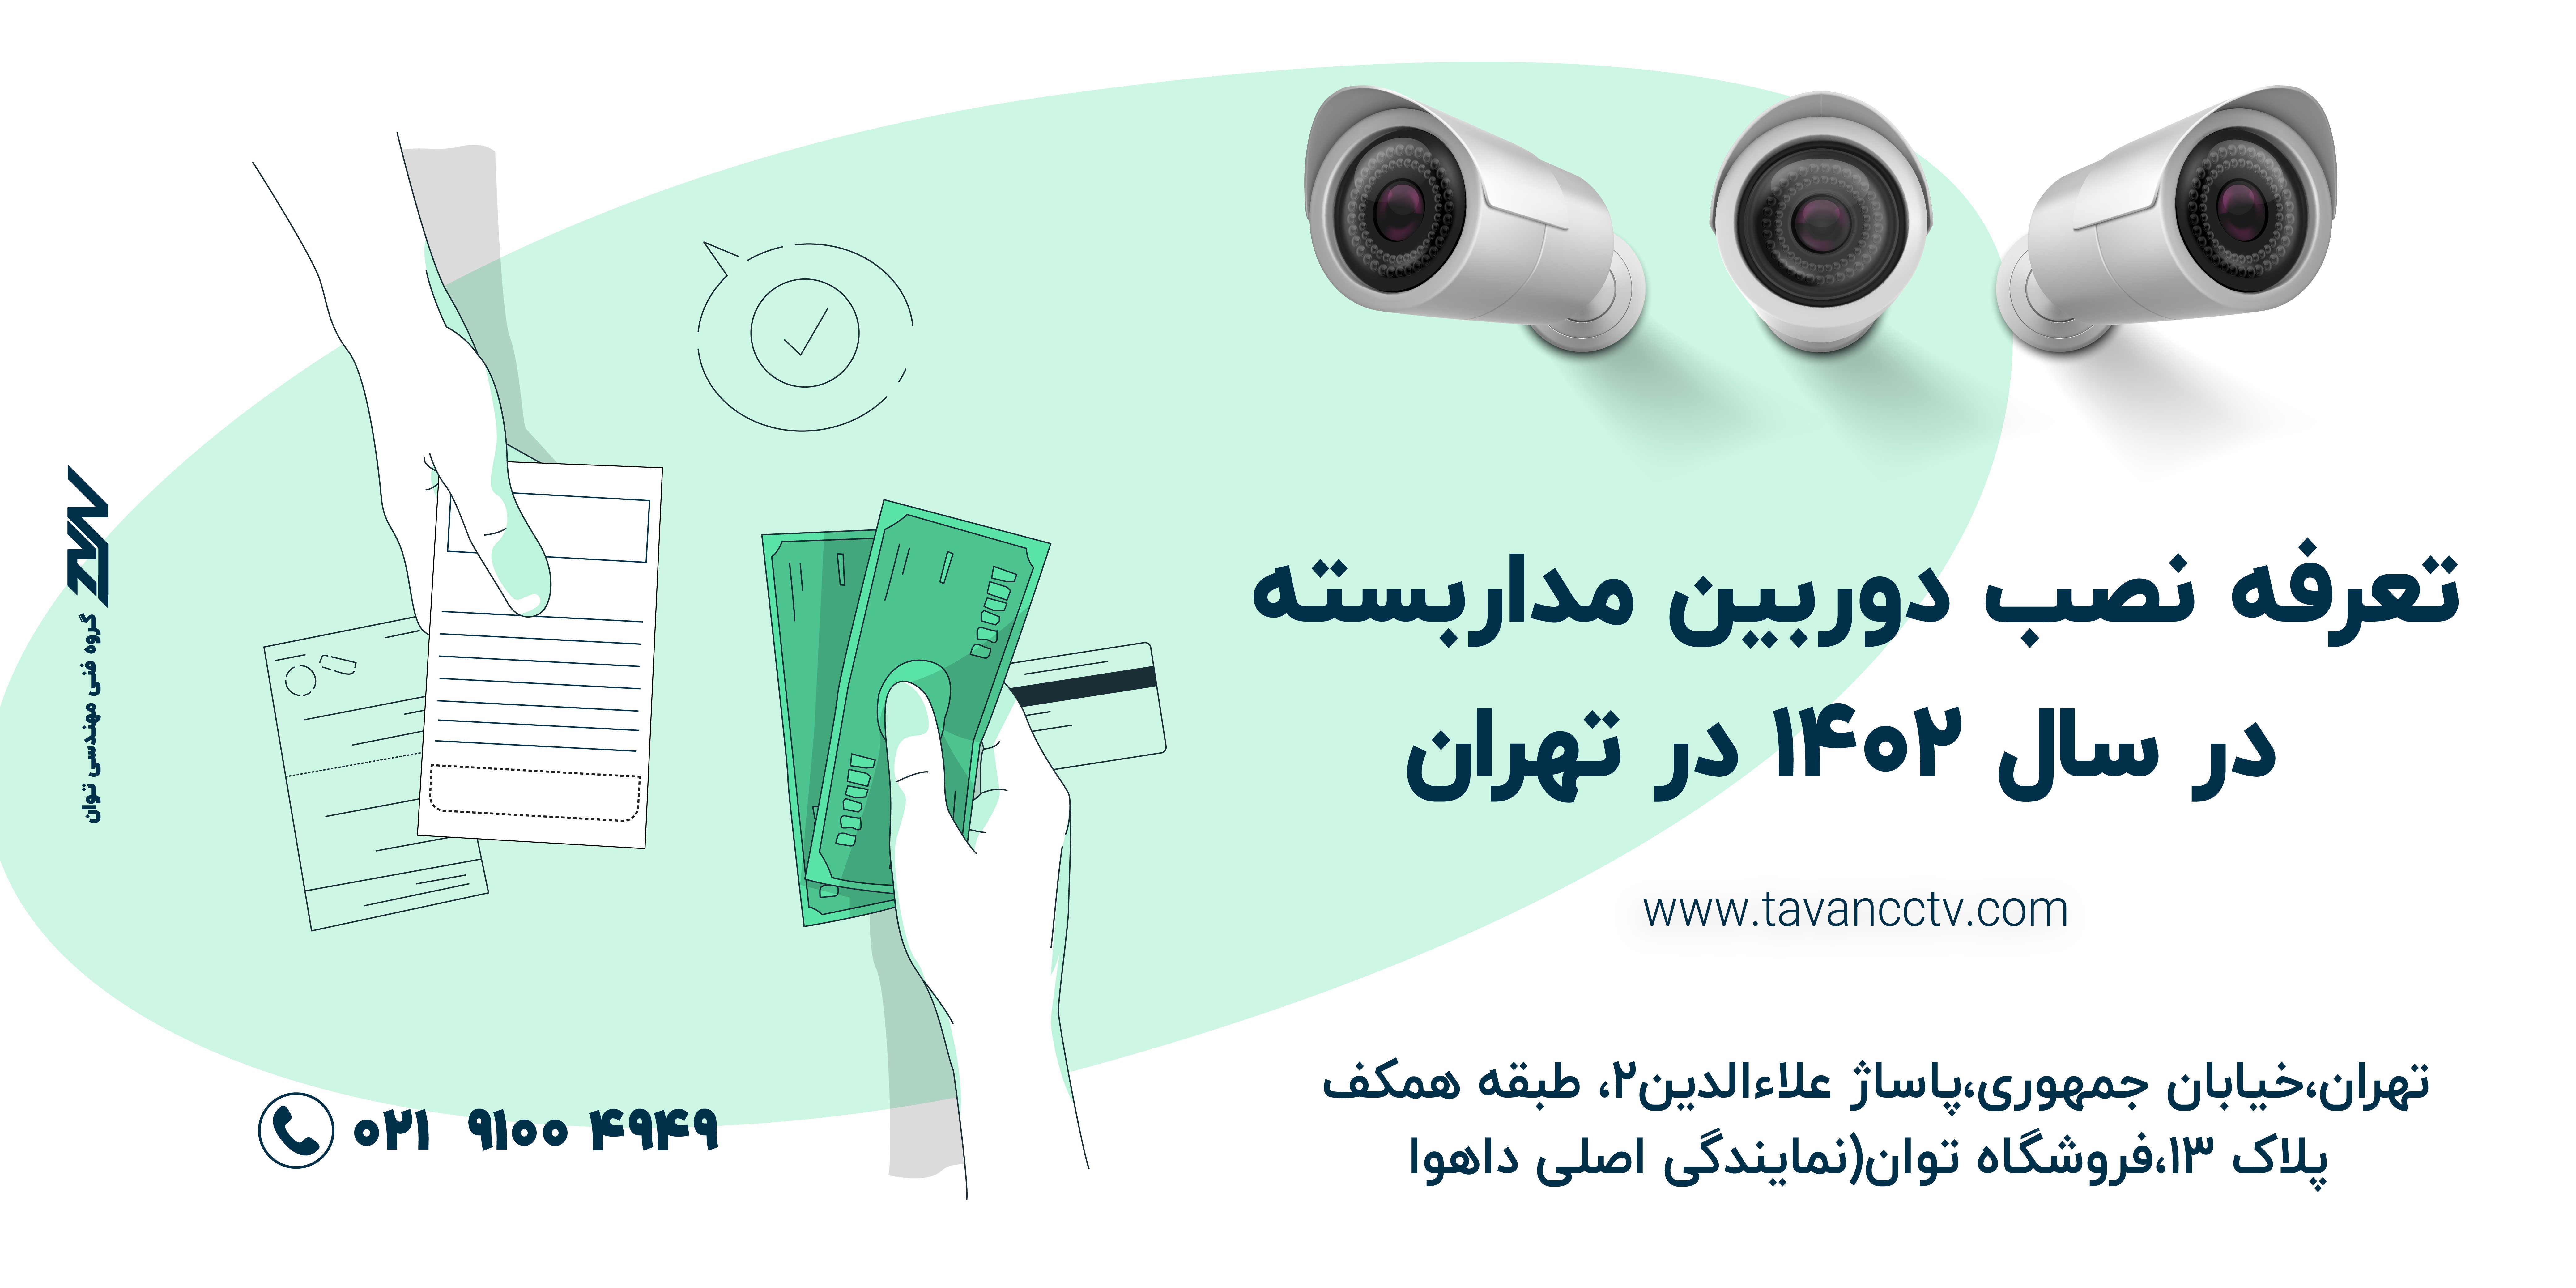 نرخ نصب تجهیزات اصلی دوربین مداربسته سال 1402 تهران